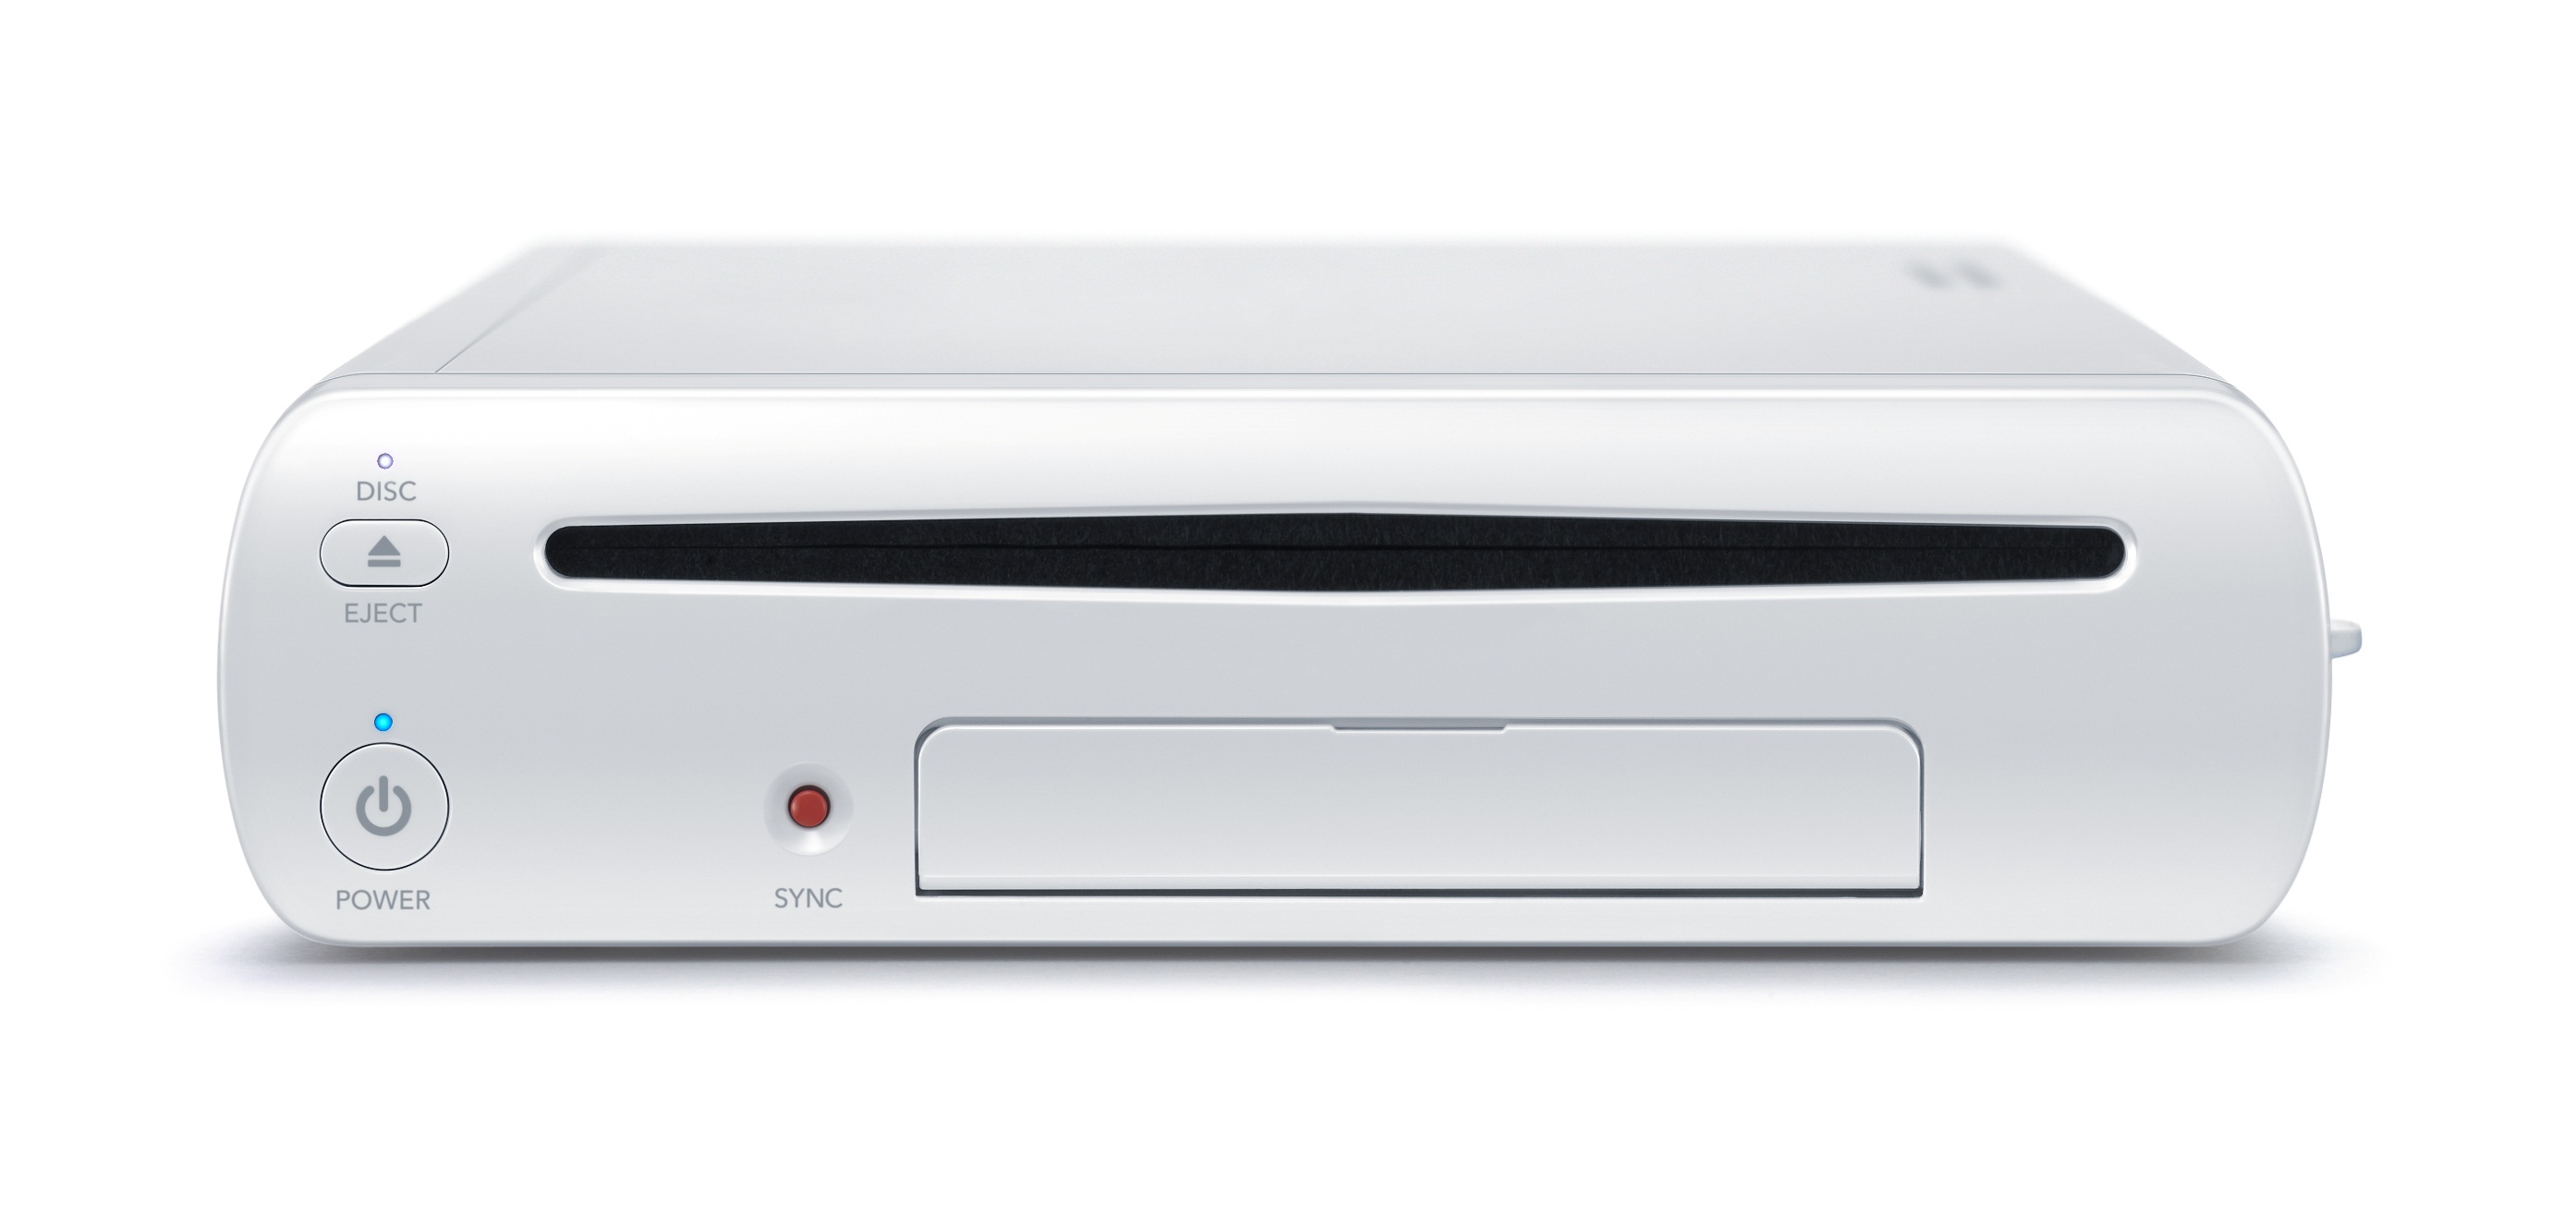 E3 2011 - La Nintendo Wii U, à la fois manette, console et tablette tactile  - ZDNet